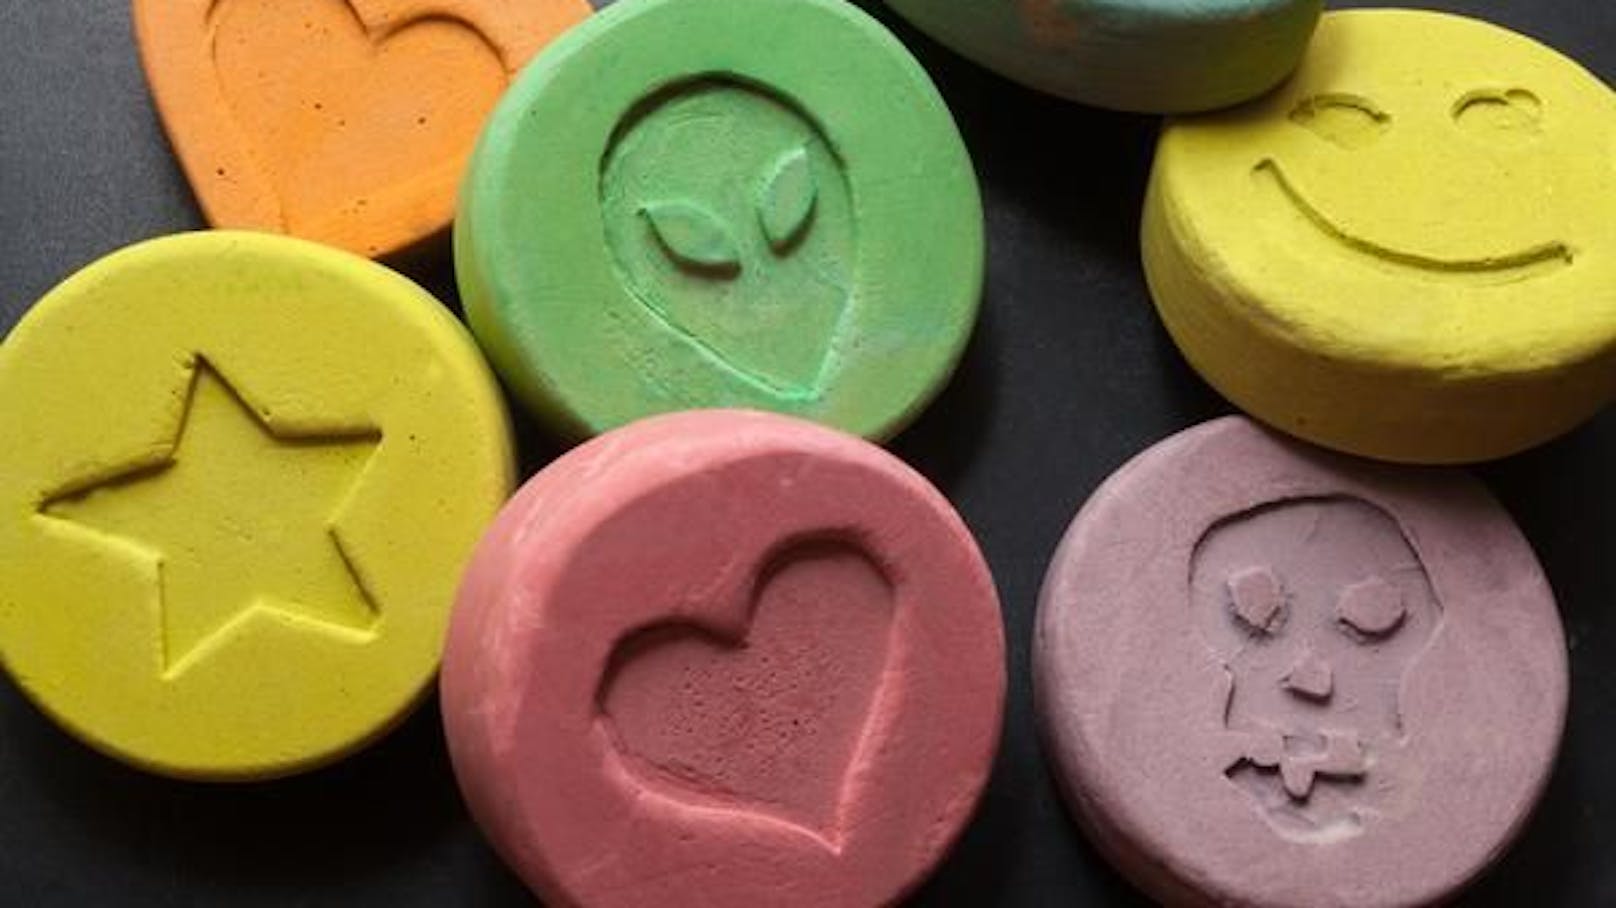 Bunte Ecstasy-Pillen als Gefahr für Kinder und Jugendliche.